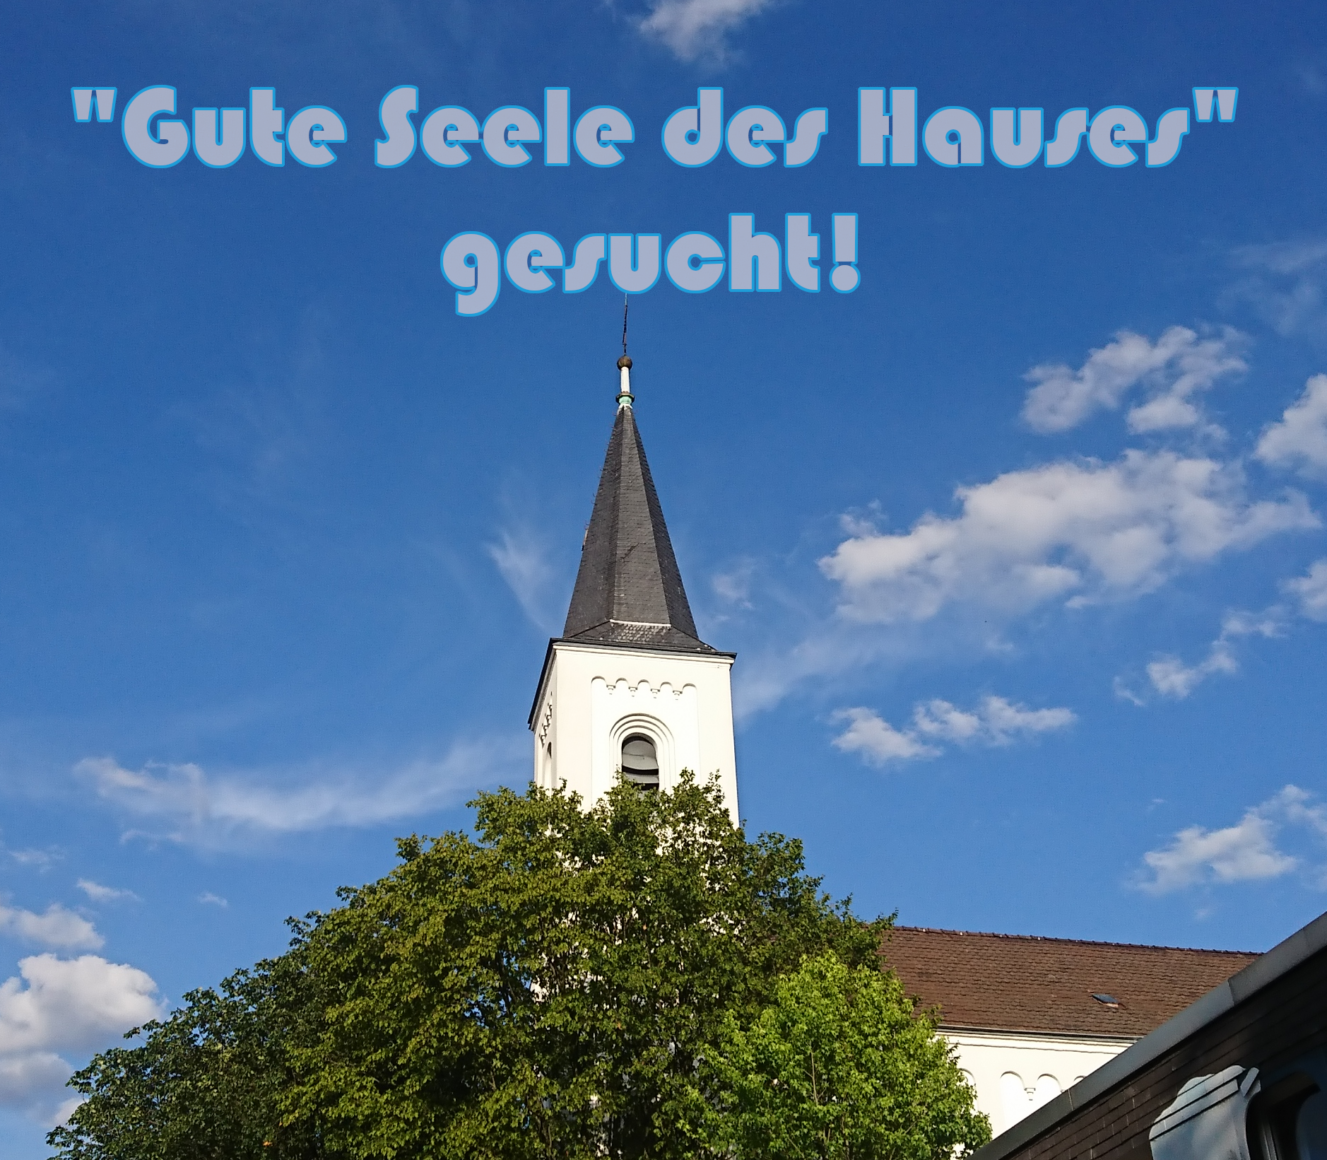 Kirche vor blauen Himmel mit Titel: "Gute Seele des Hauses" gesucht